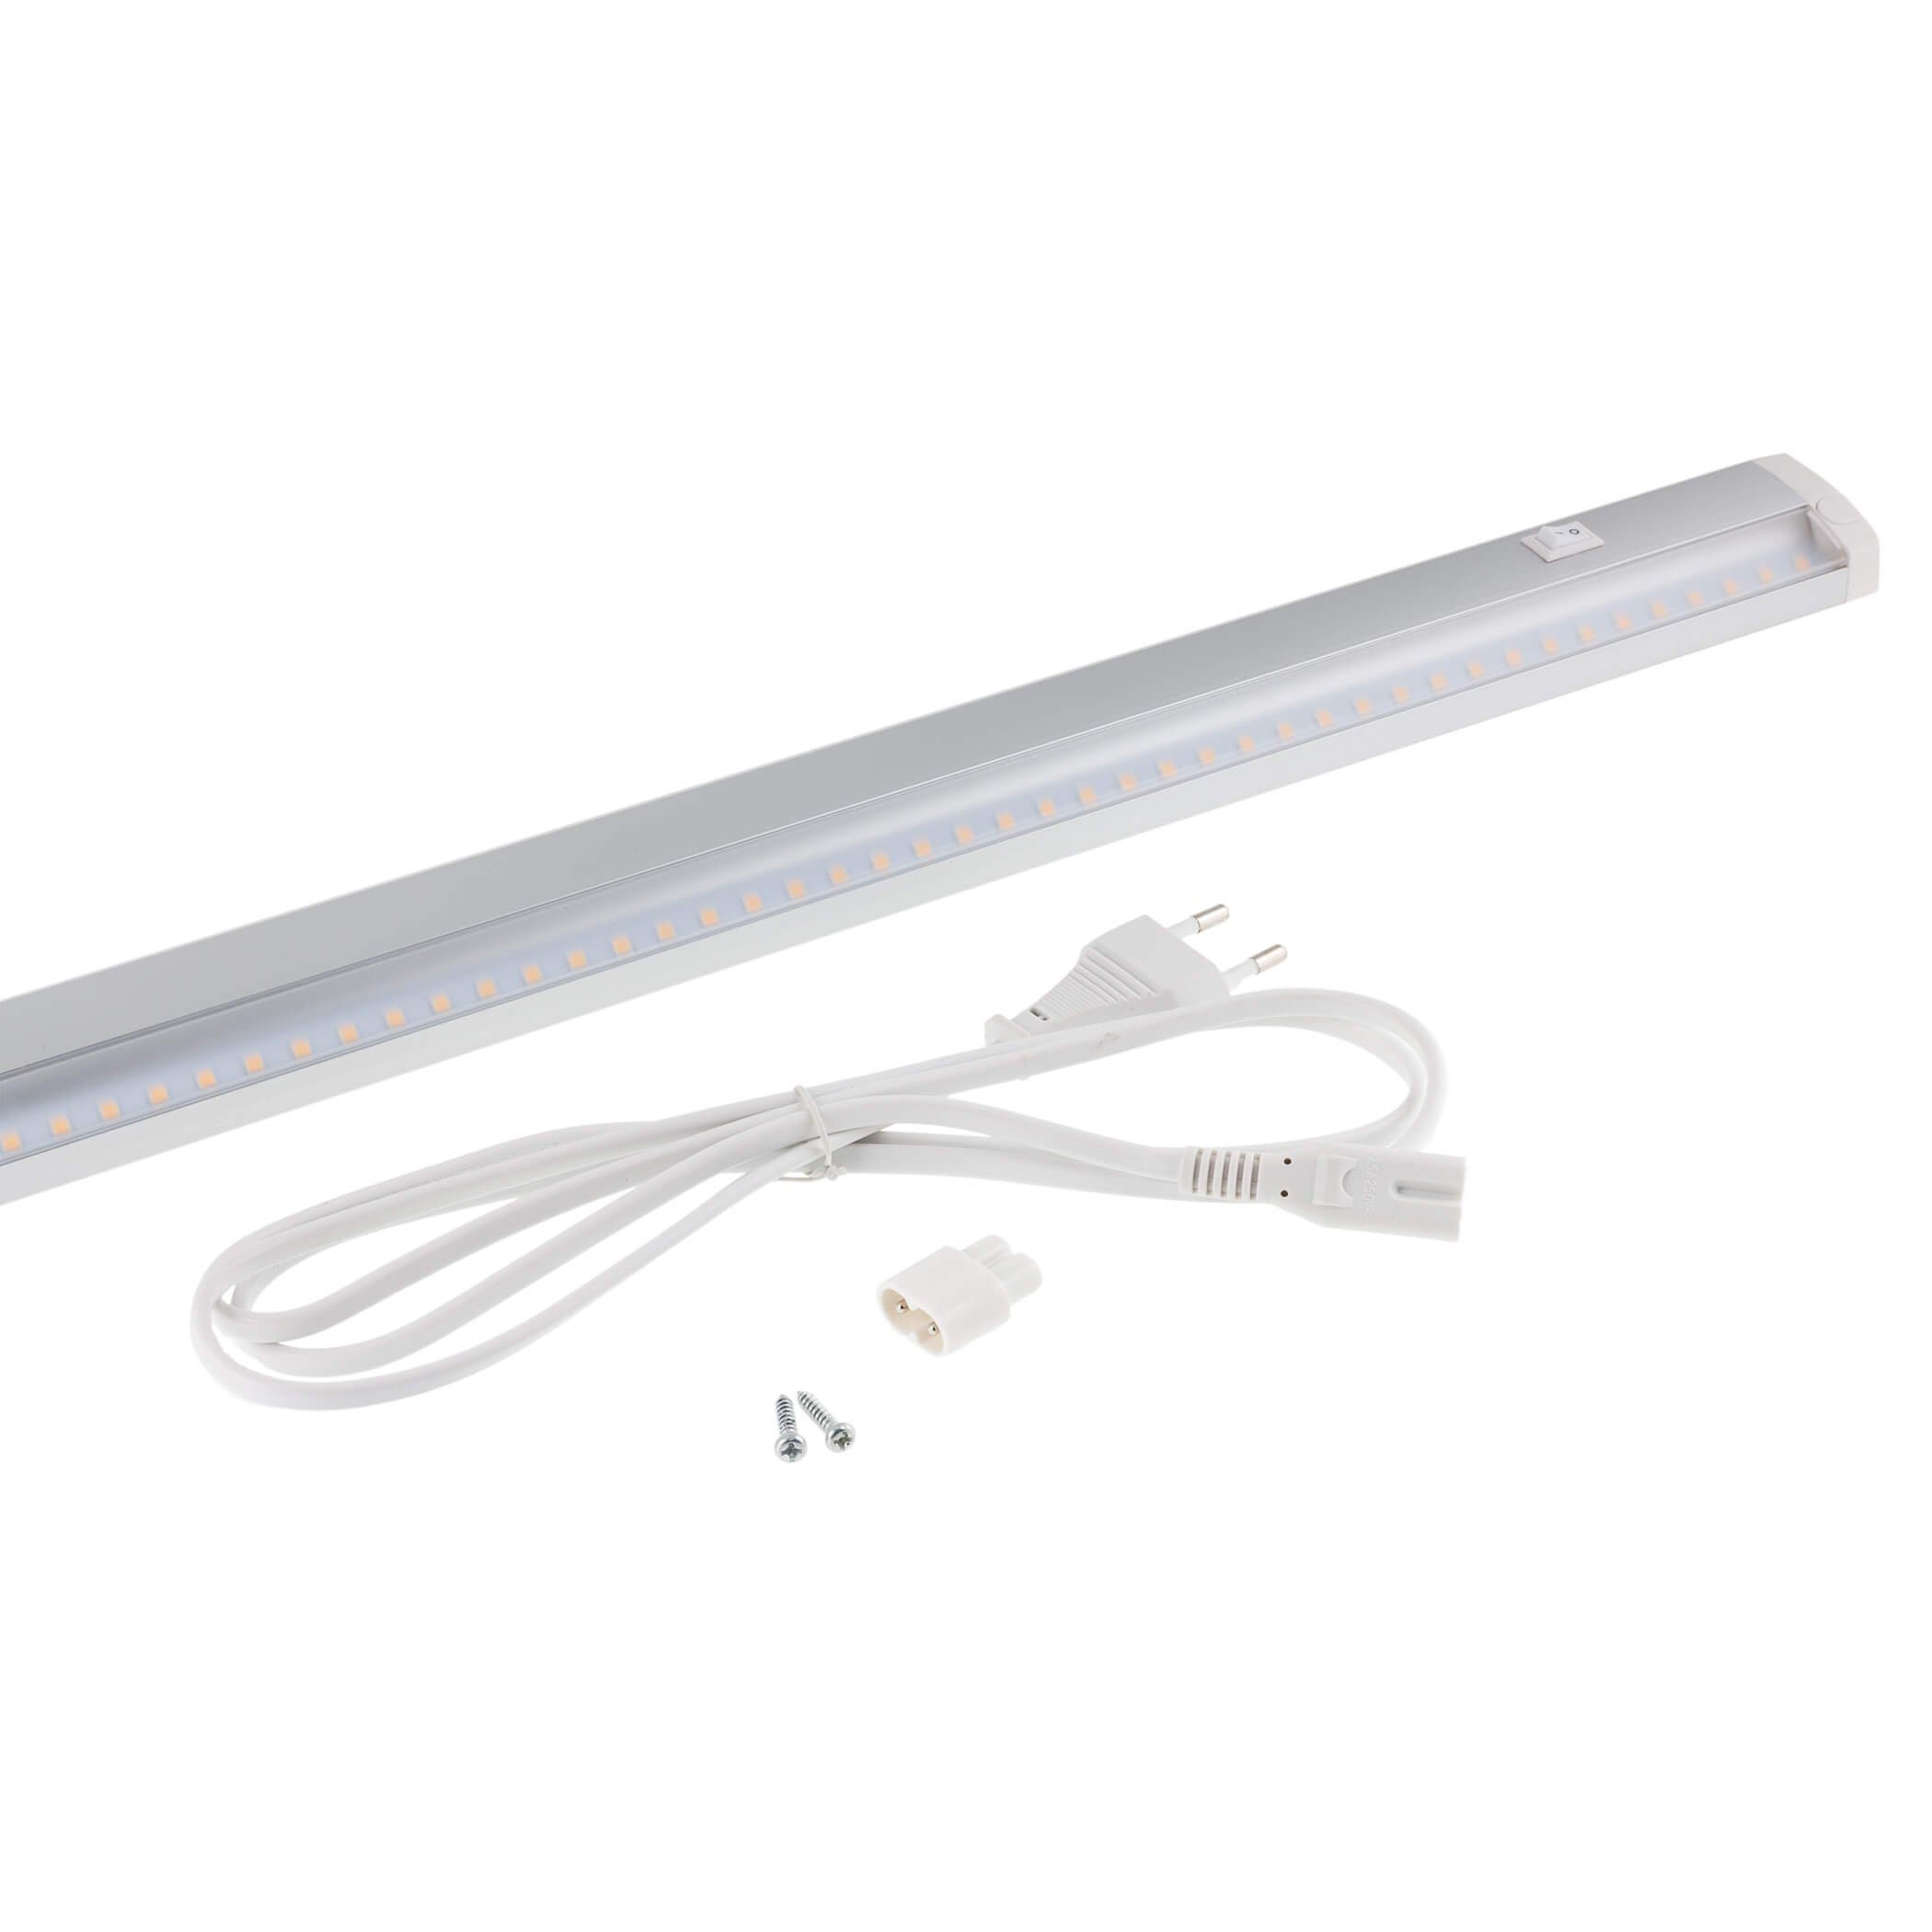 SEBSON Aufbauleuchte LED Unterbauleuchte 60cm Leiste 11W erweiterbar, warmweiß warmweiß, Hohe 850lm Leuchtkraft